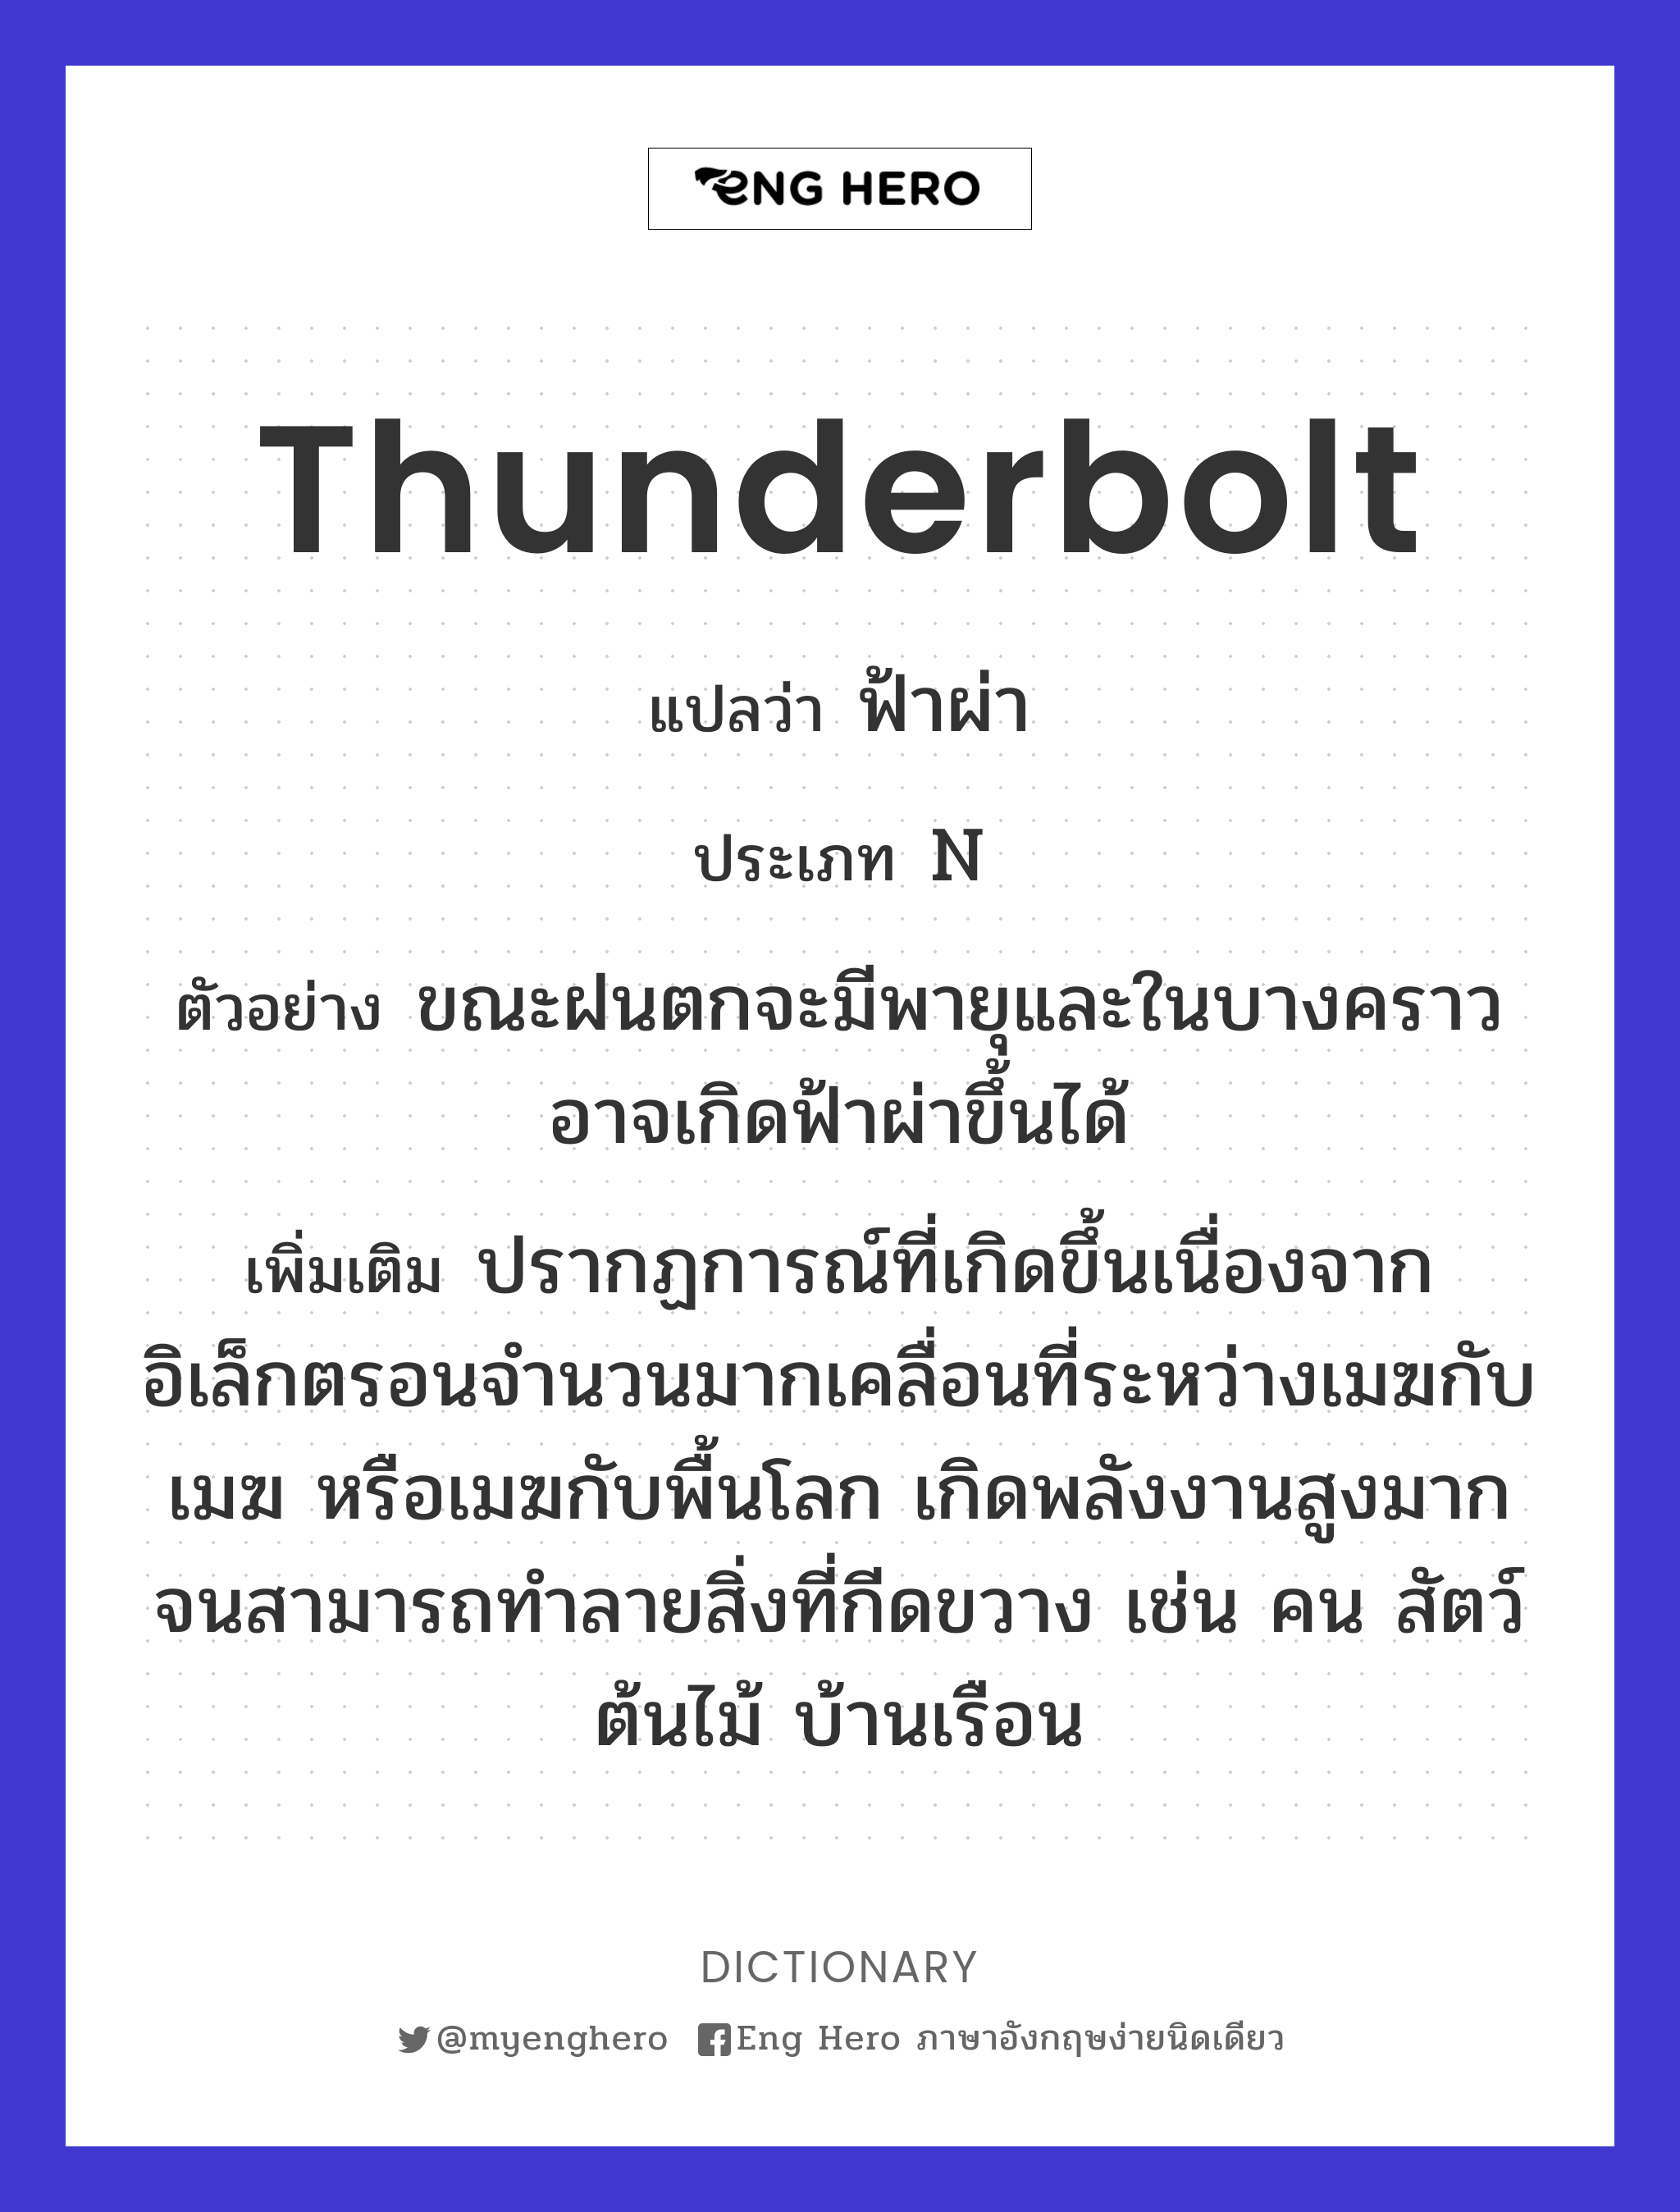 thunderbolt